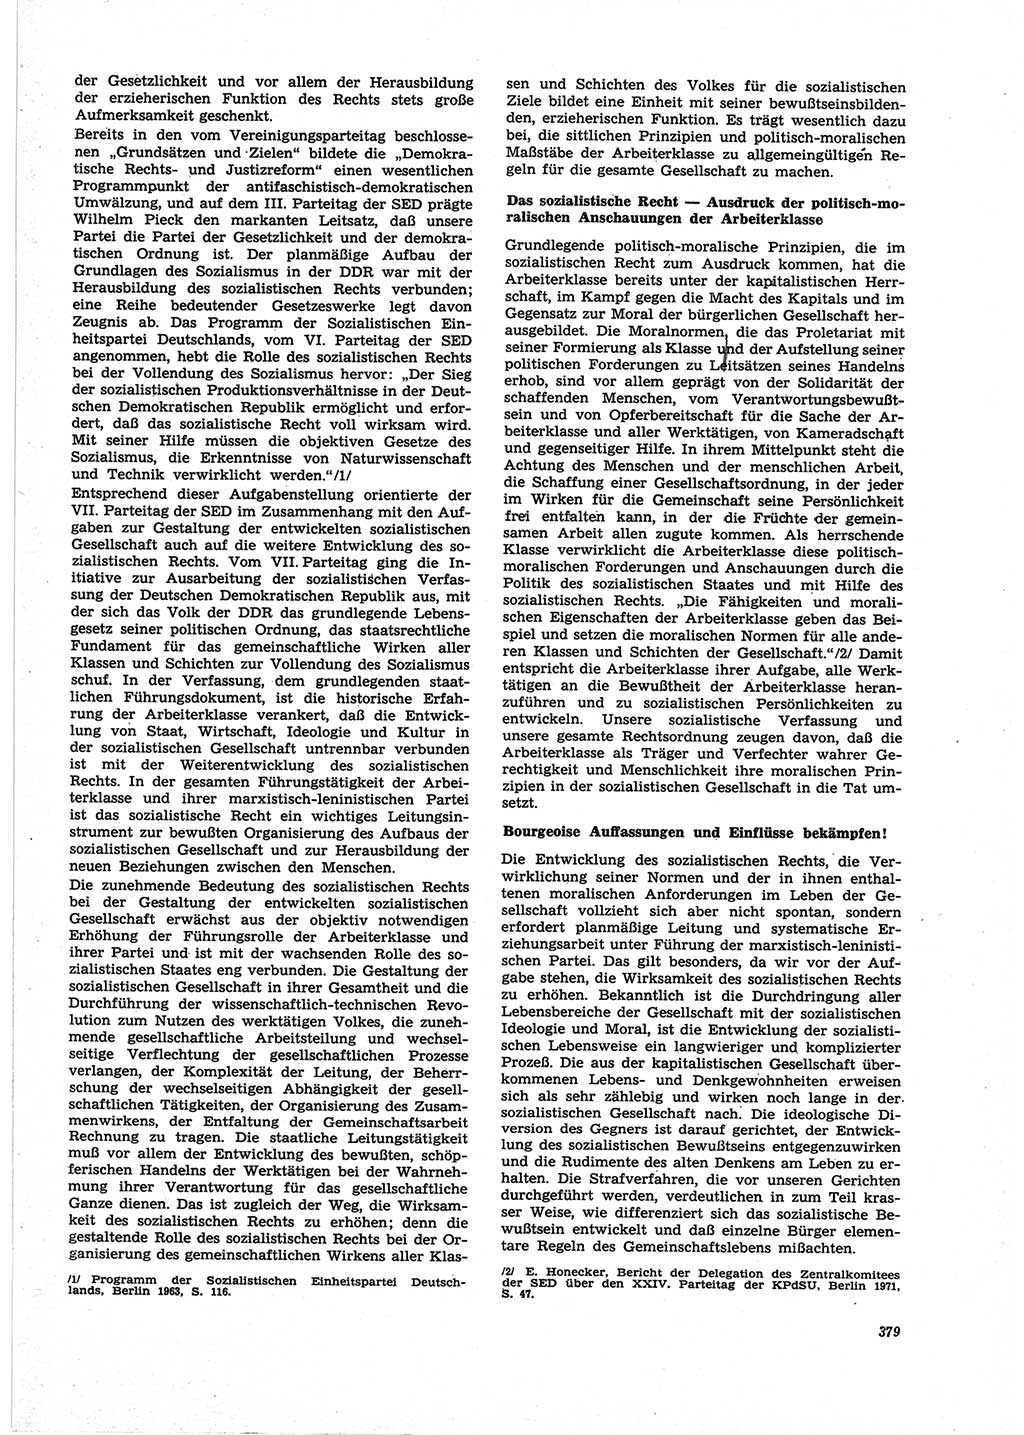 Neue Justiz (NJ), Zeitschrift für Recht und Rechtswissenschaft [Deutsche Demokratische Republik (DDR)], 25. Jahrgang 1971, Seite 379 (NJ DDR 1971, S. 379)